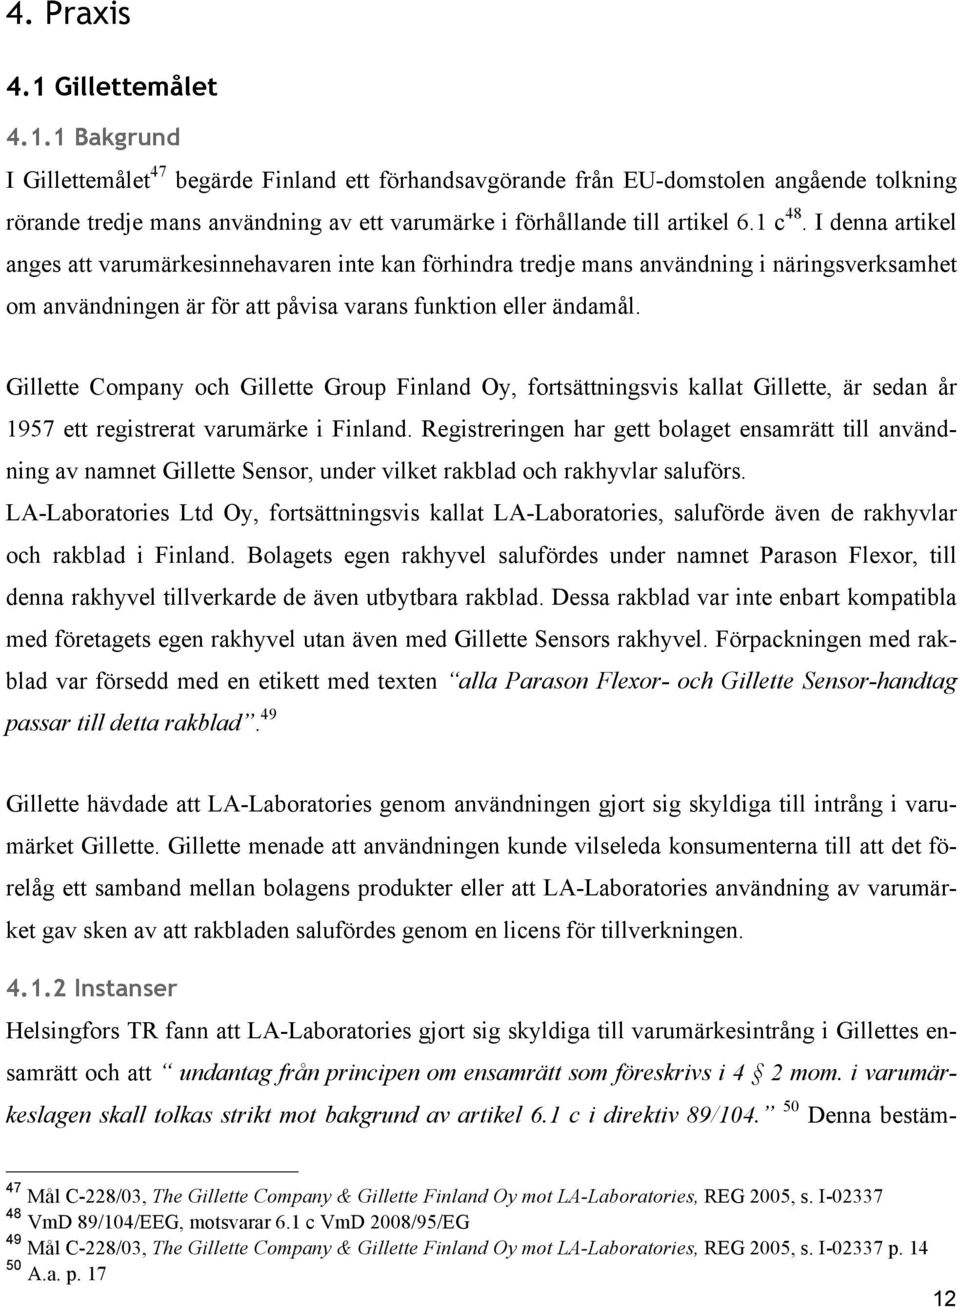 Gillette Company och Gillette Group Finland Oy, fortsättningsvis kallat Gillette, är sedan år 1957 ett registrerat varumärke i Finland.